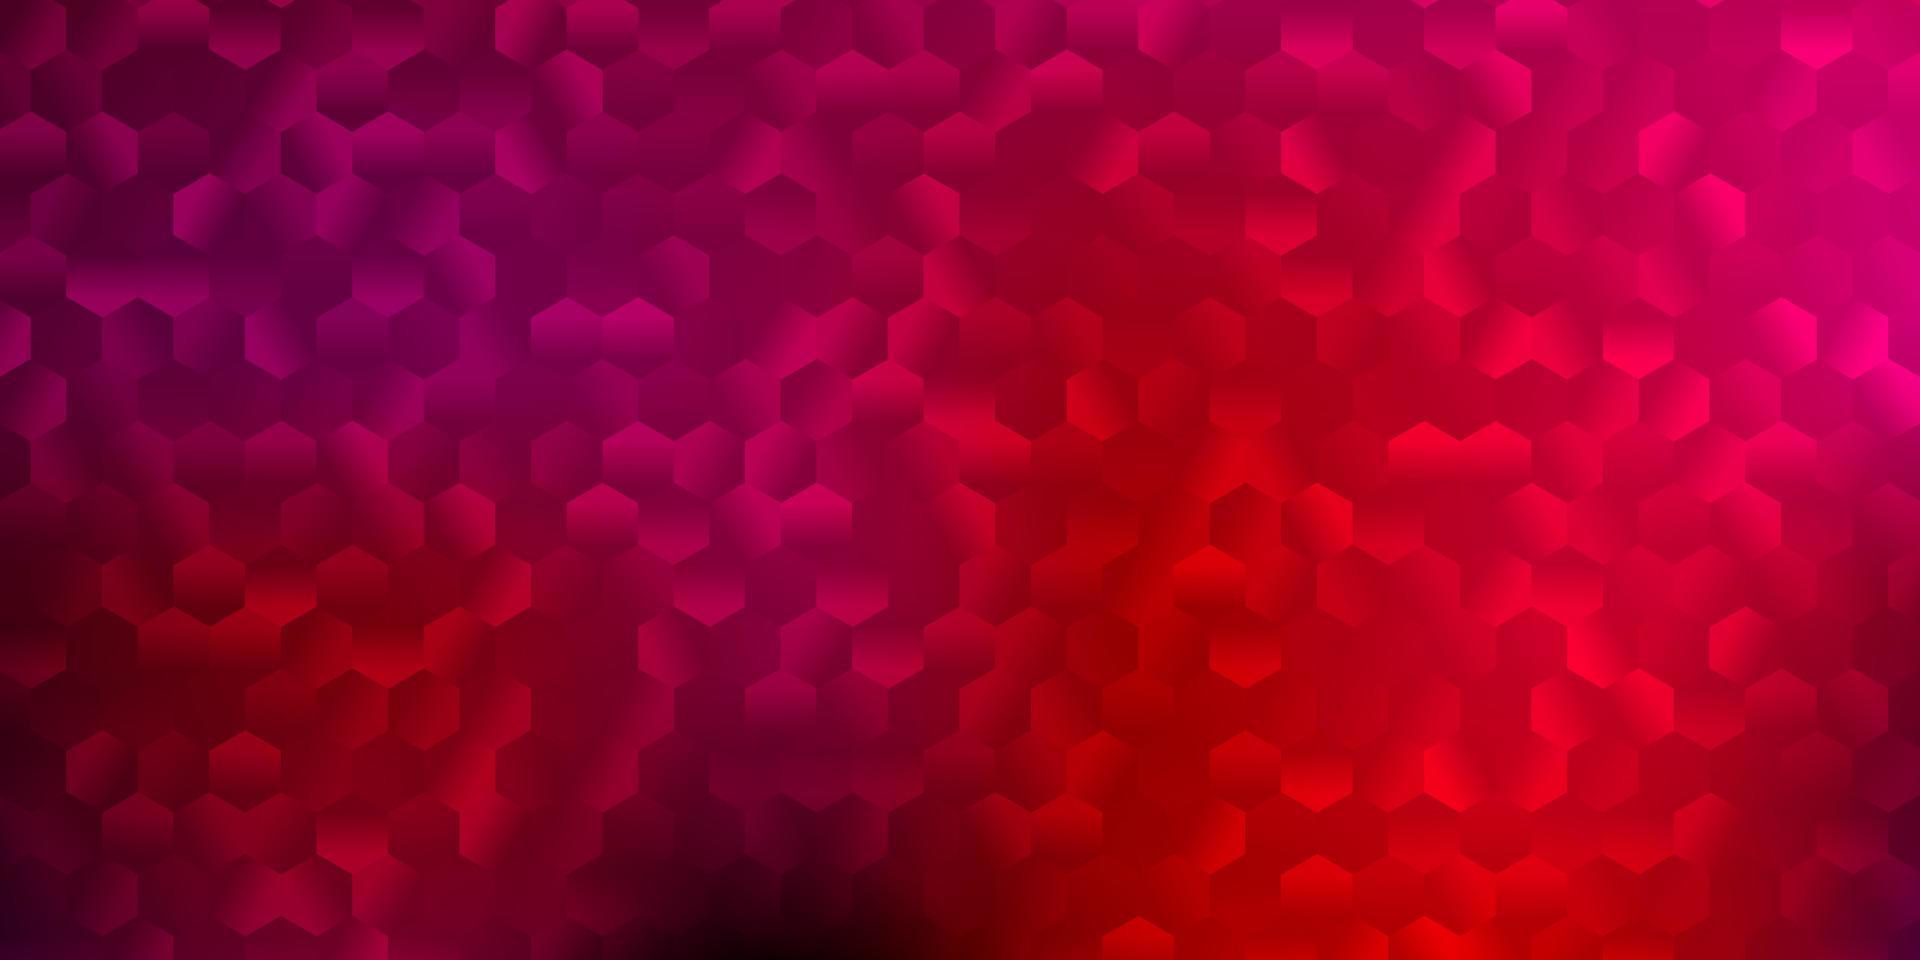 textura vector rosa claro com hexágonos coloridos.